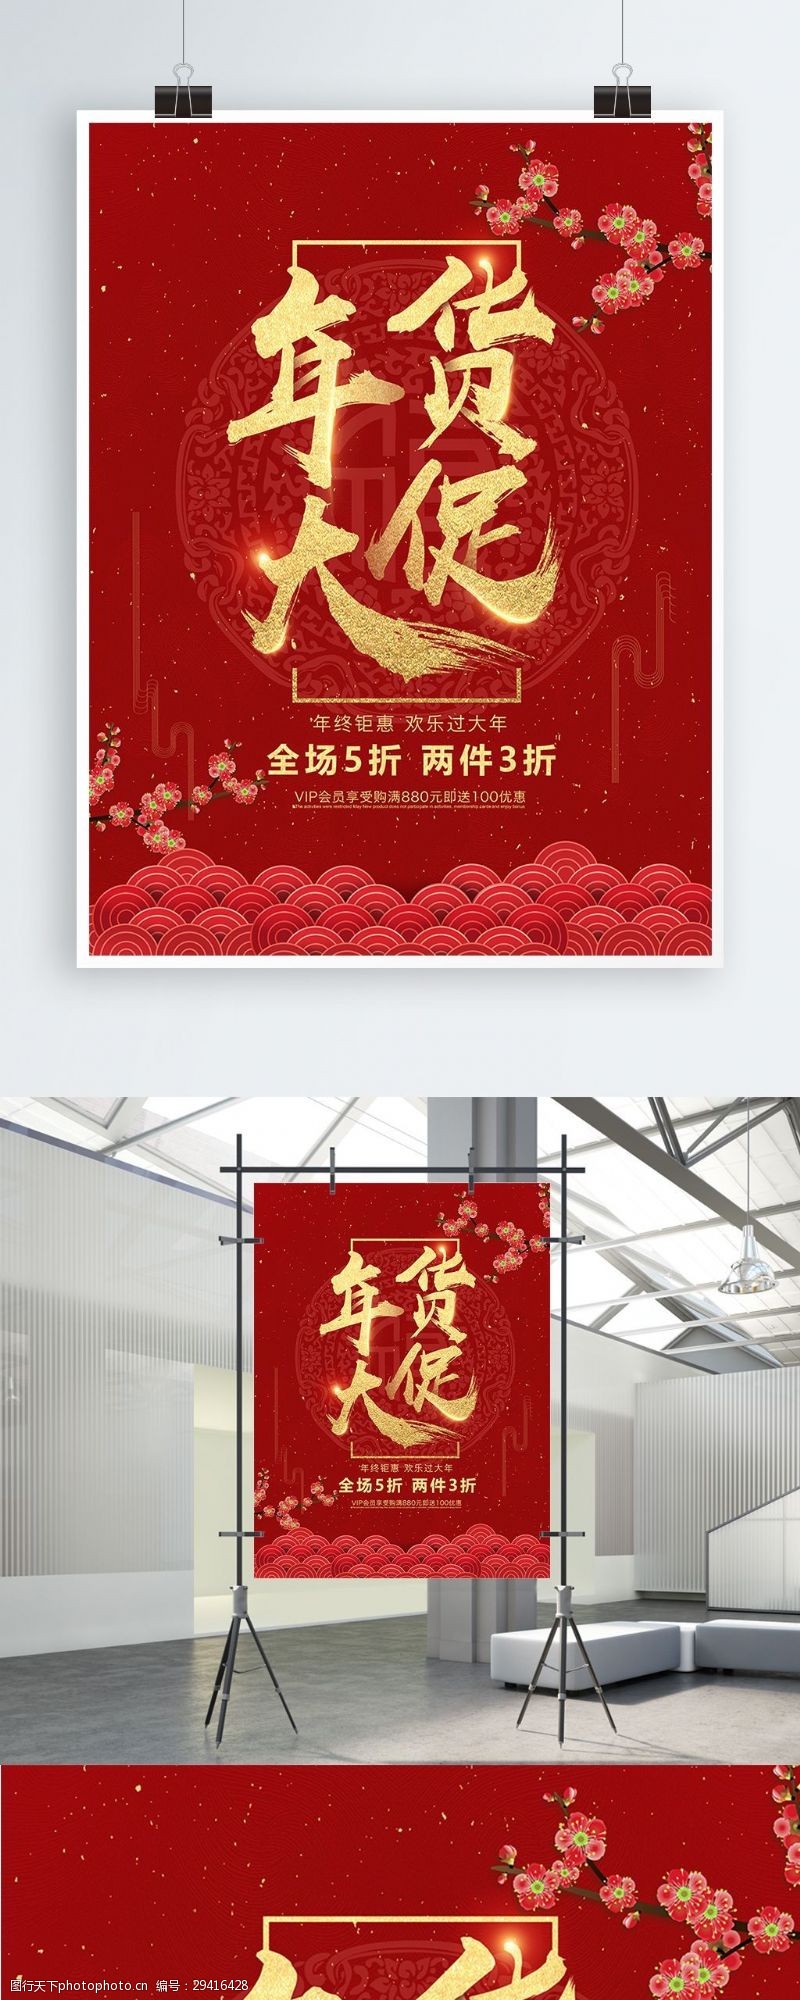 红梅报春图2018红色中国风年货节促销海报